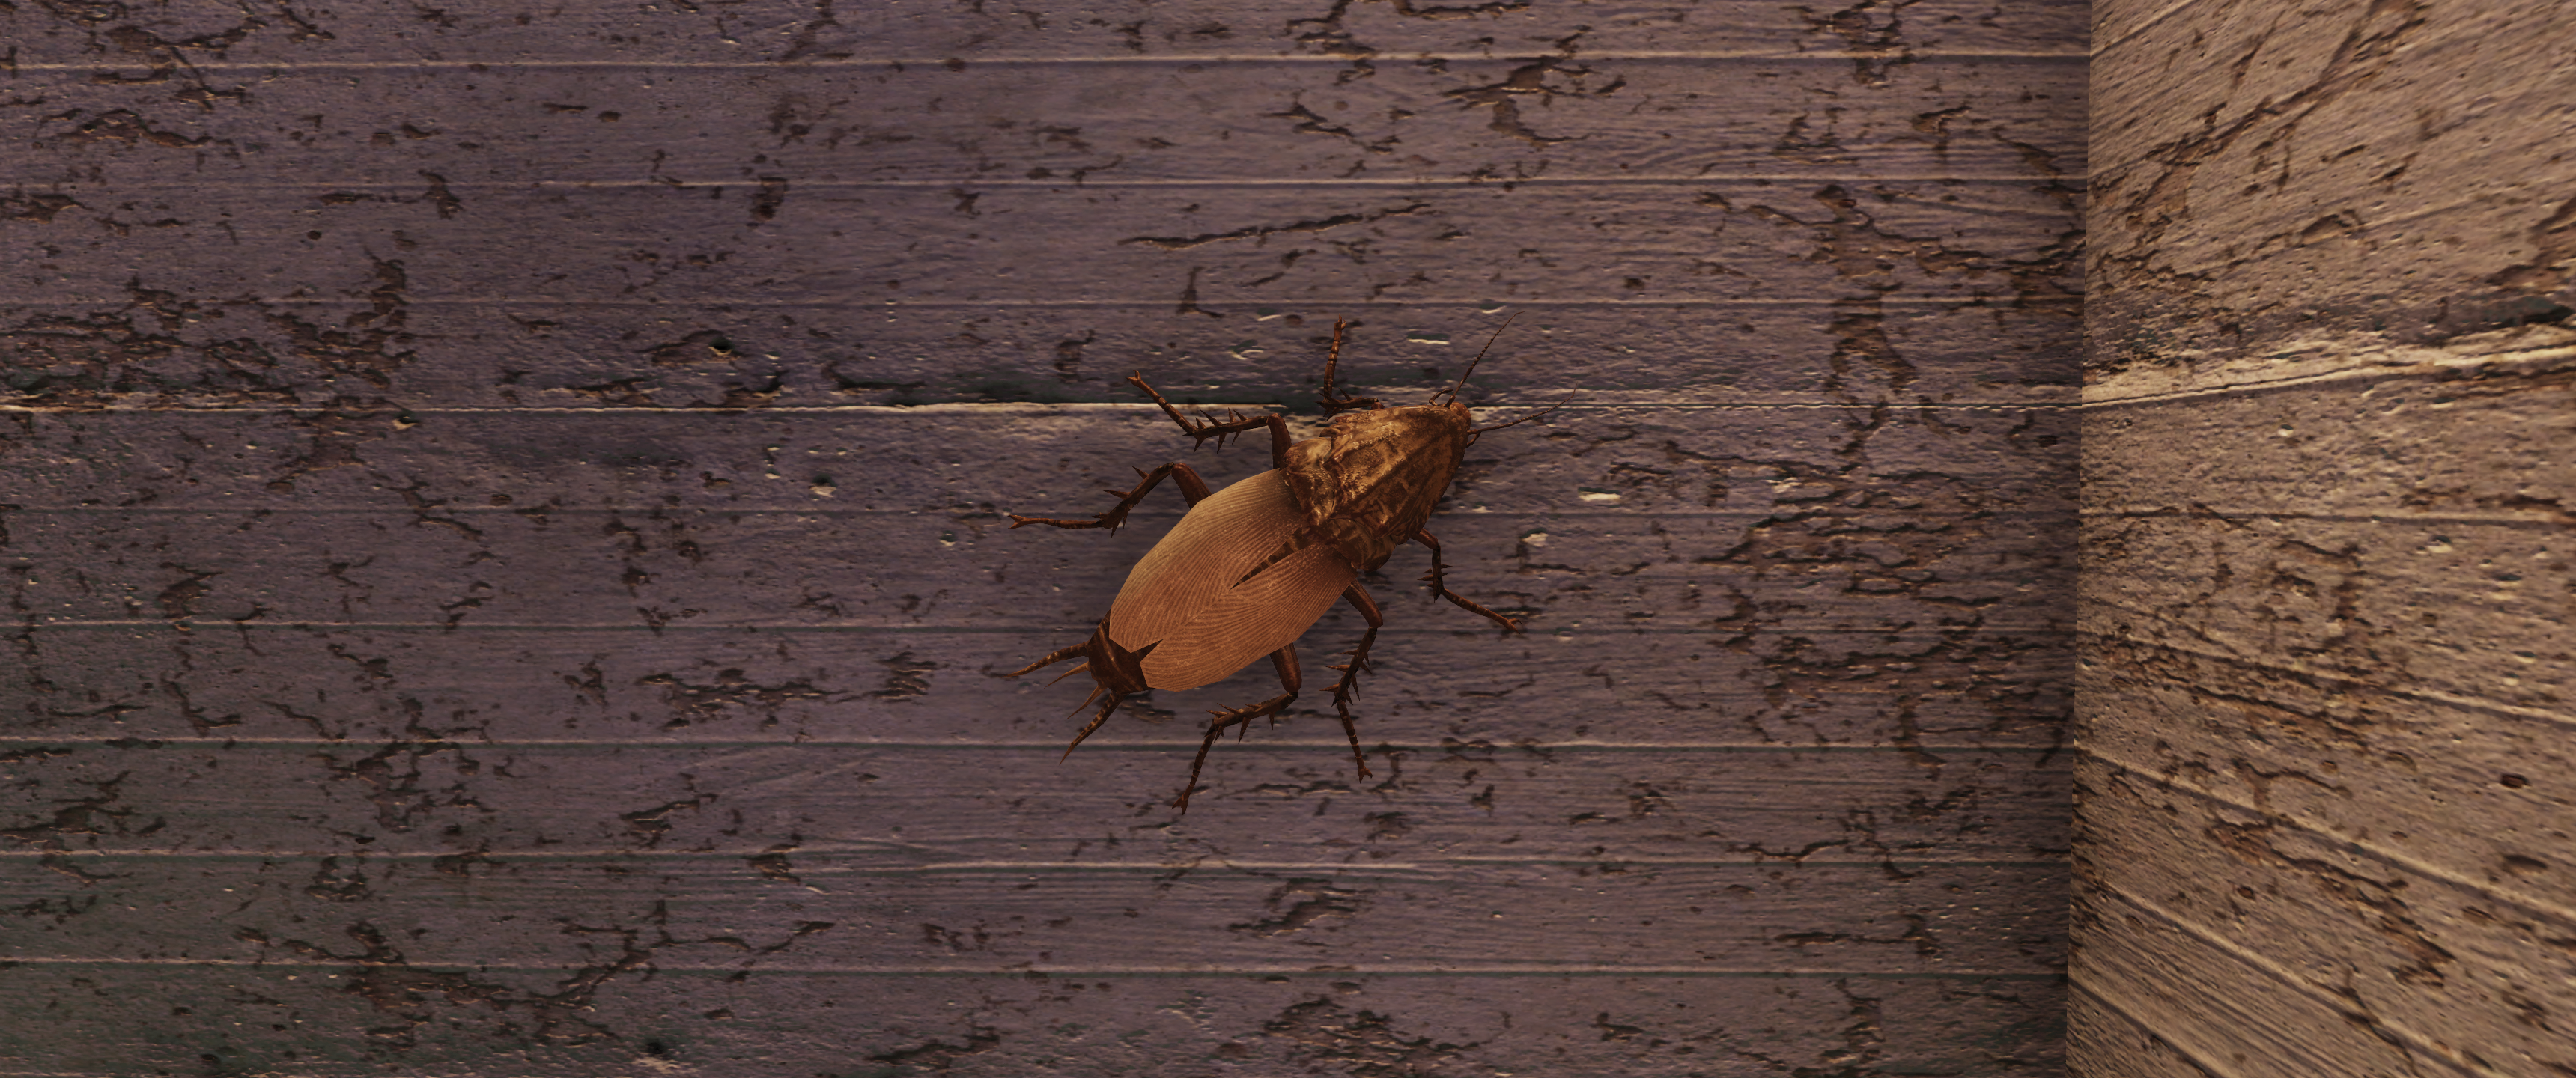 General 3440x1440 Fallout 76 Fallout cockroaches screen shot